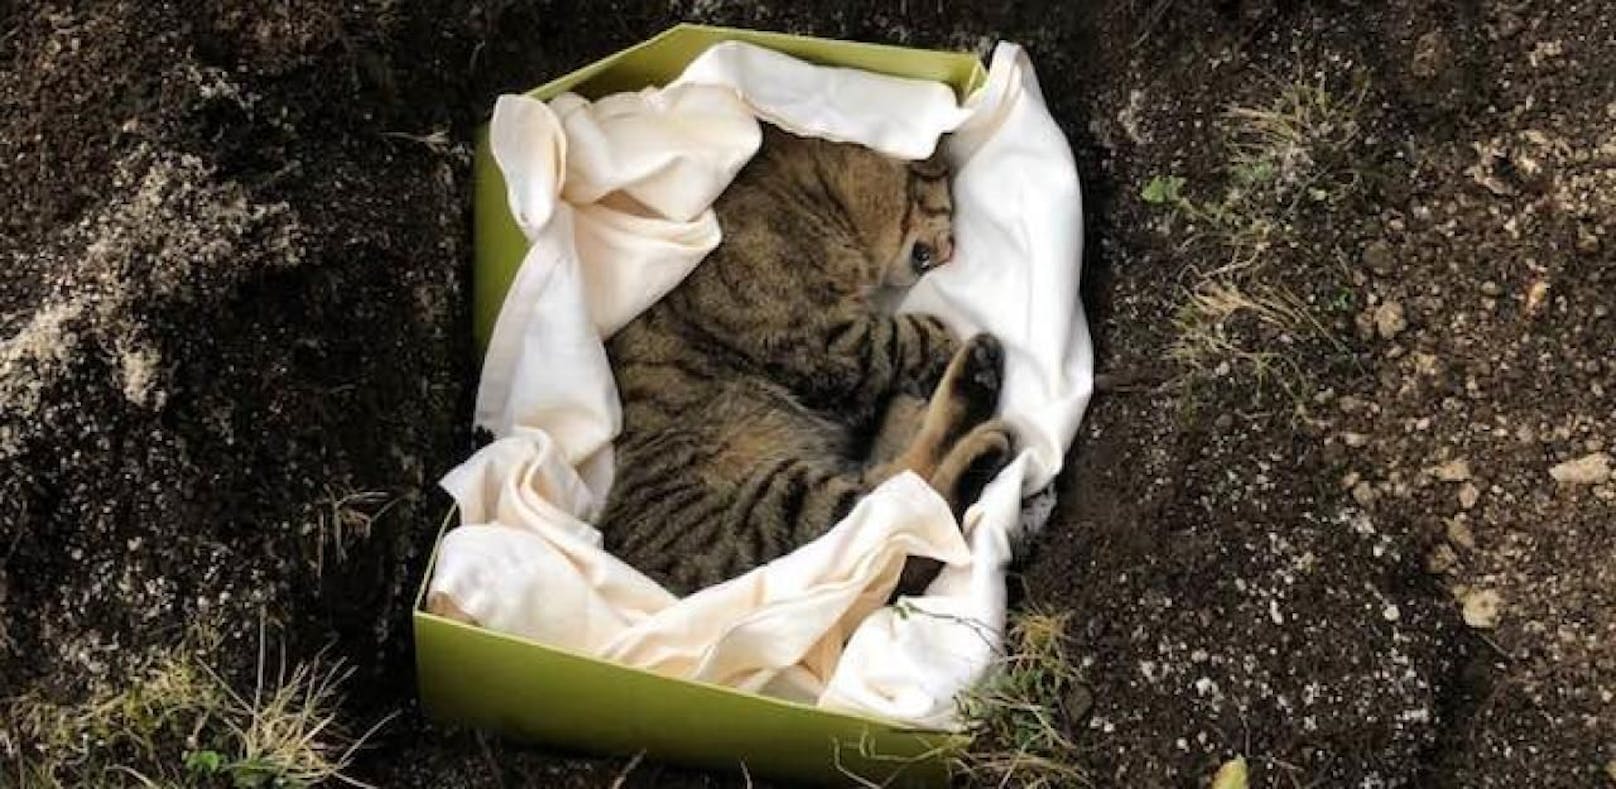 Falsche Katze begraben, Exhumierung ergebnislos